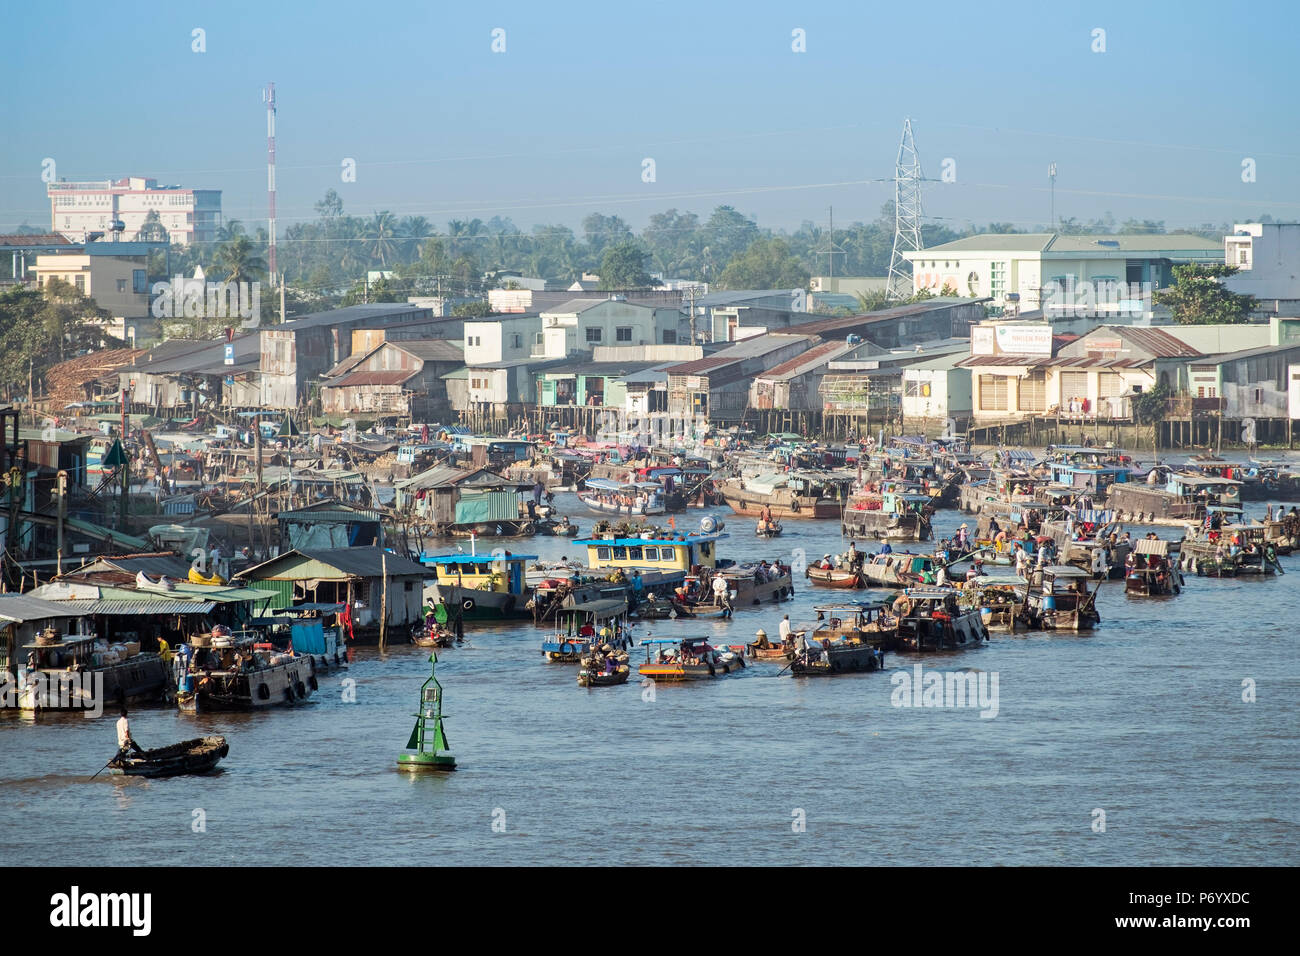 Asia, Sud Est Asiatico, Vietnam, il Delta del Mekong, Can Tho, Cai Rang, flottante mercato di frutta e verdura Foto Stock